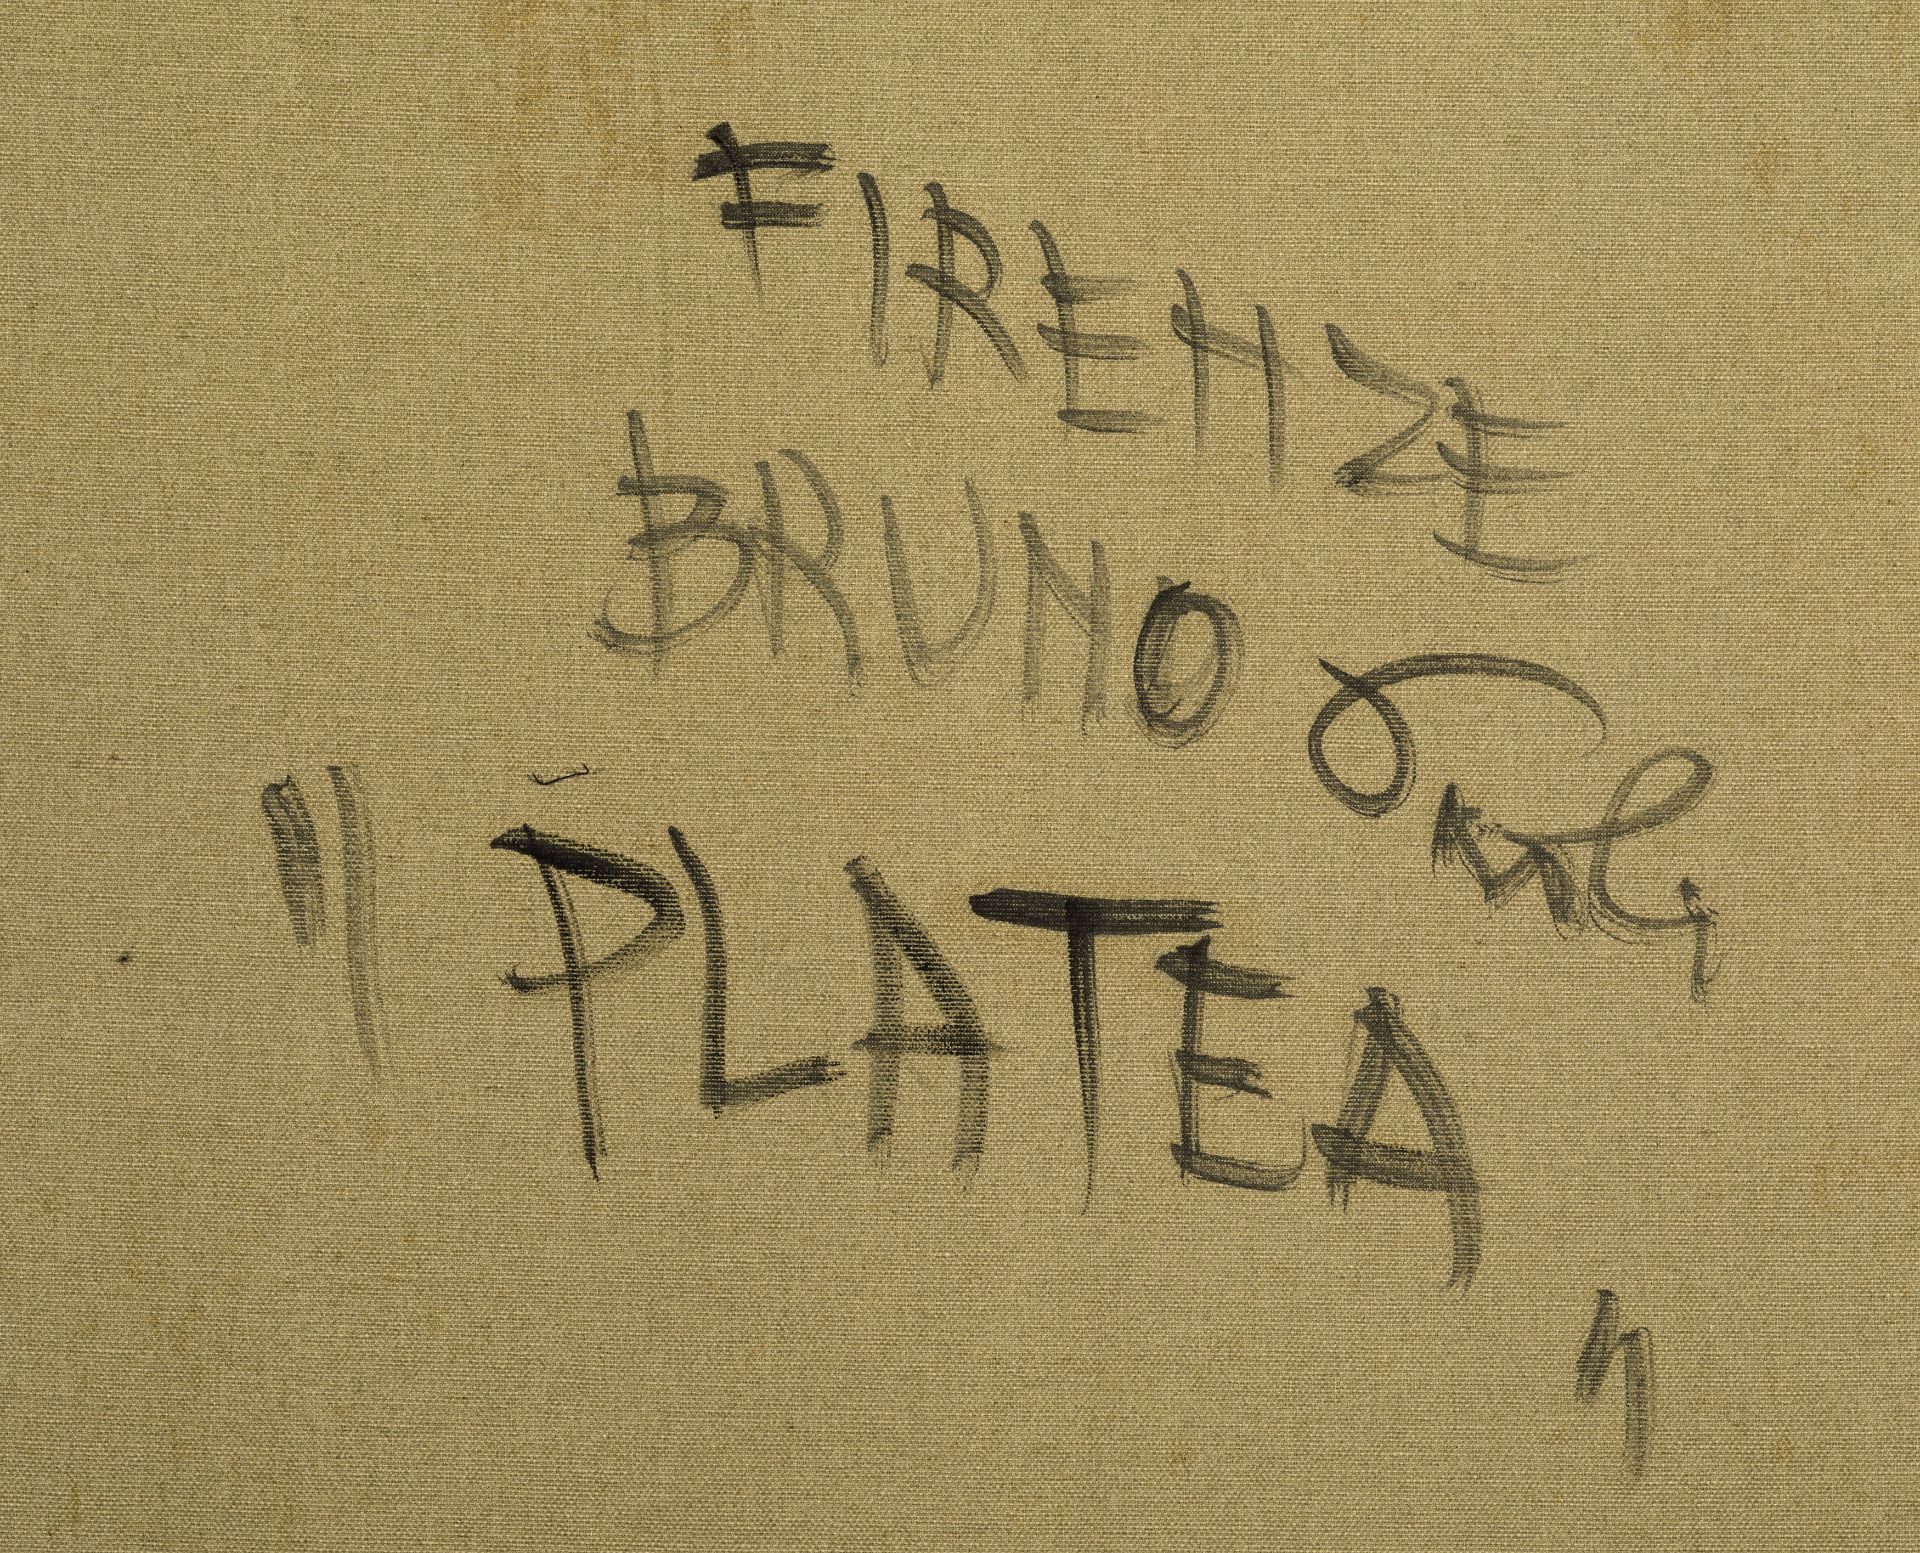 BRUNO PAOLI - Image 6 of 6